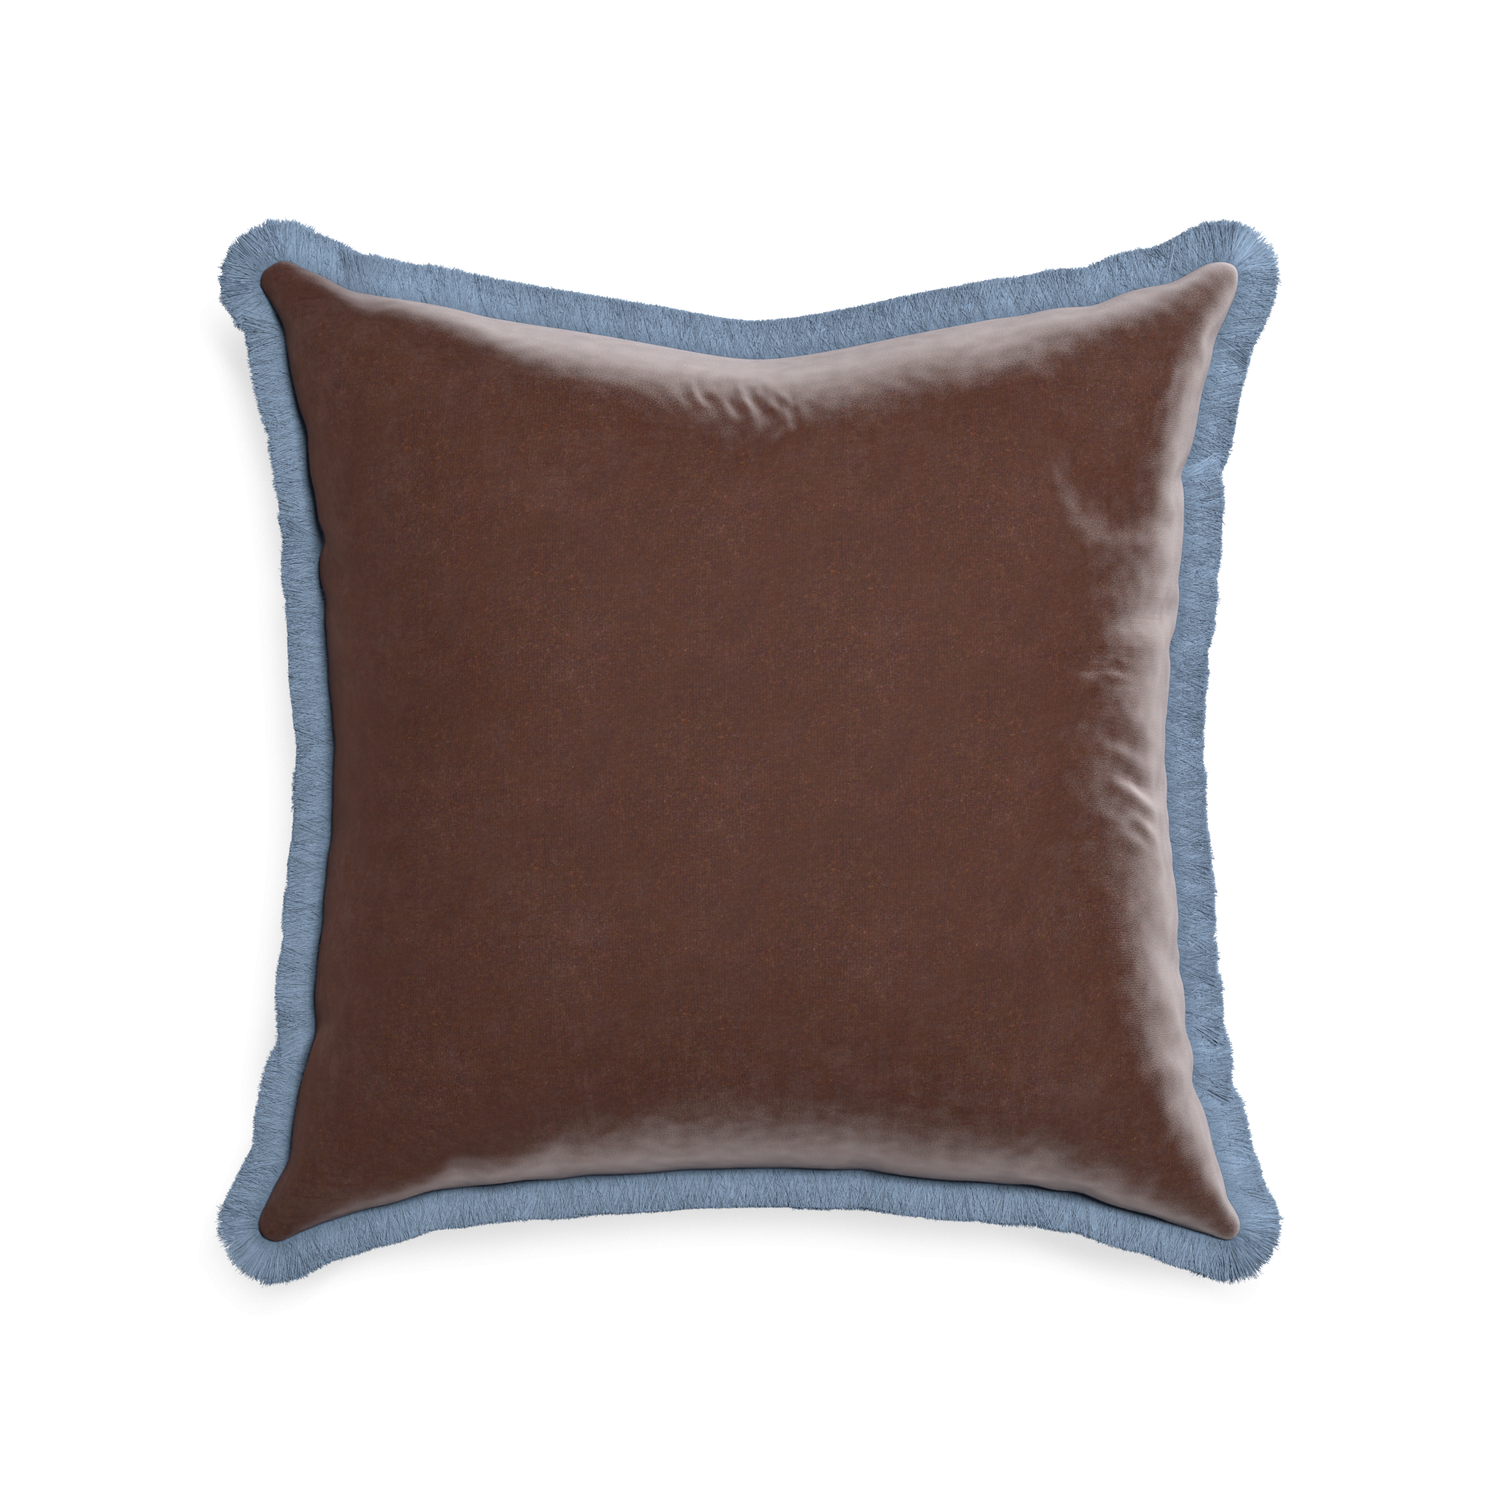 square brown velvet pillow with sky blue fringe